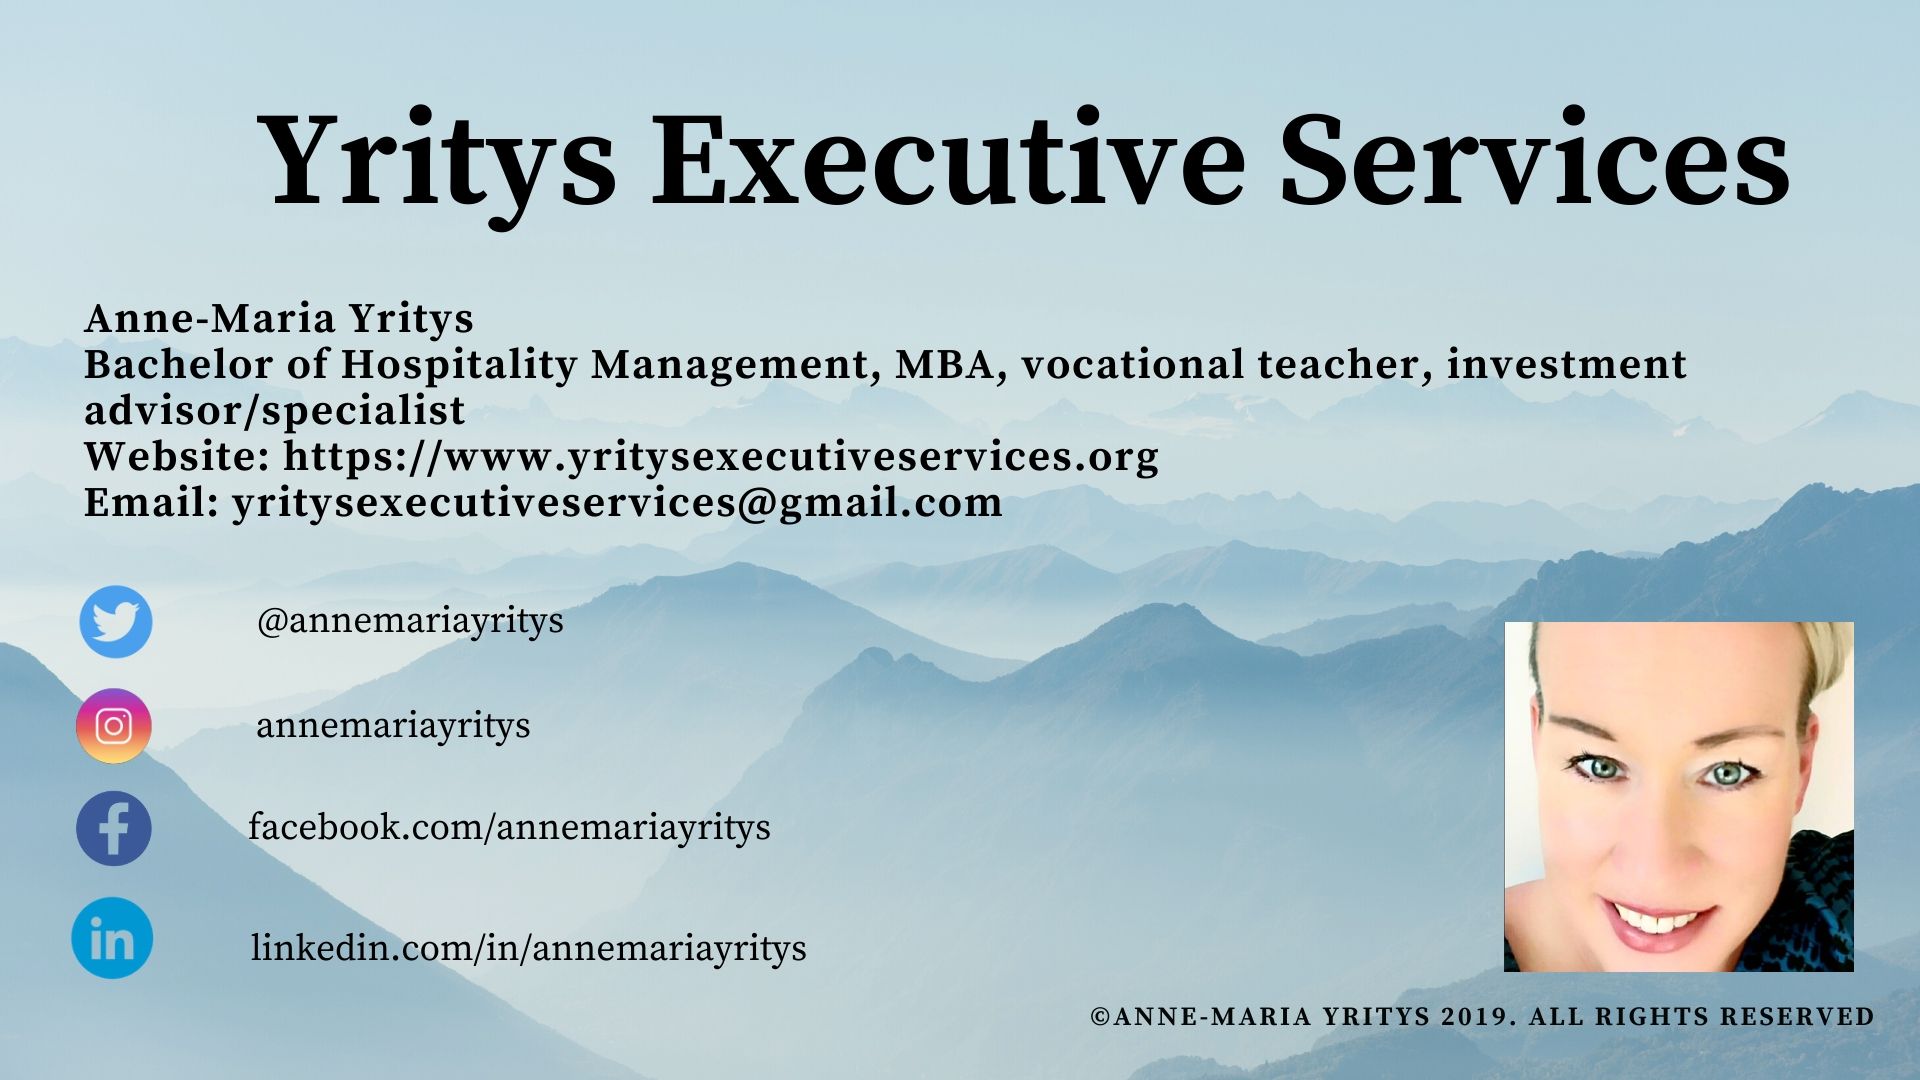 Yritys Executive Services